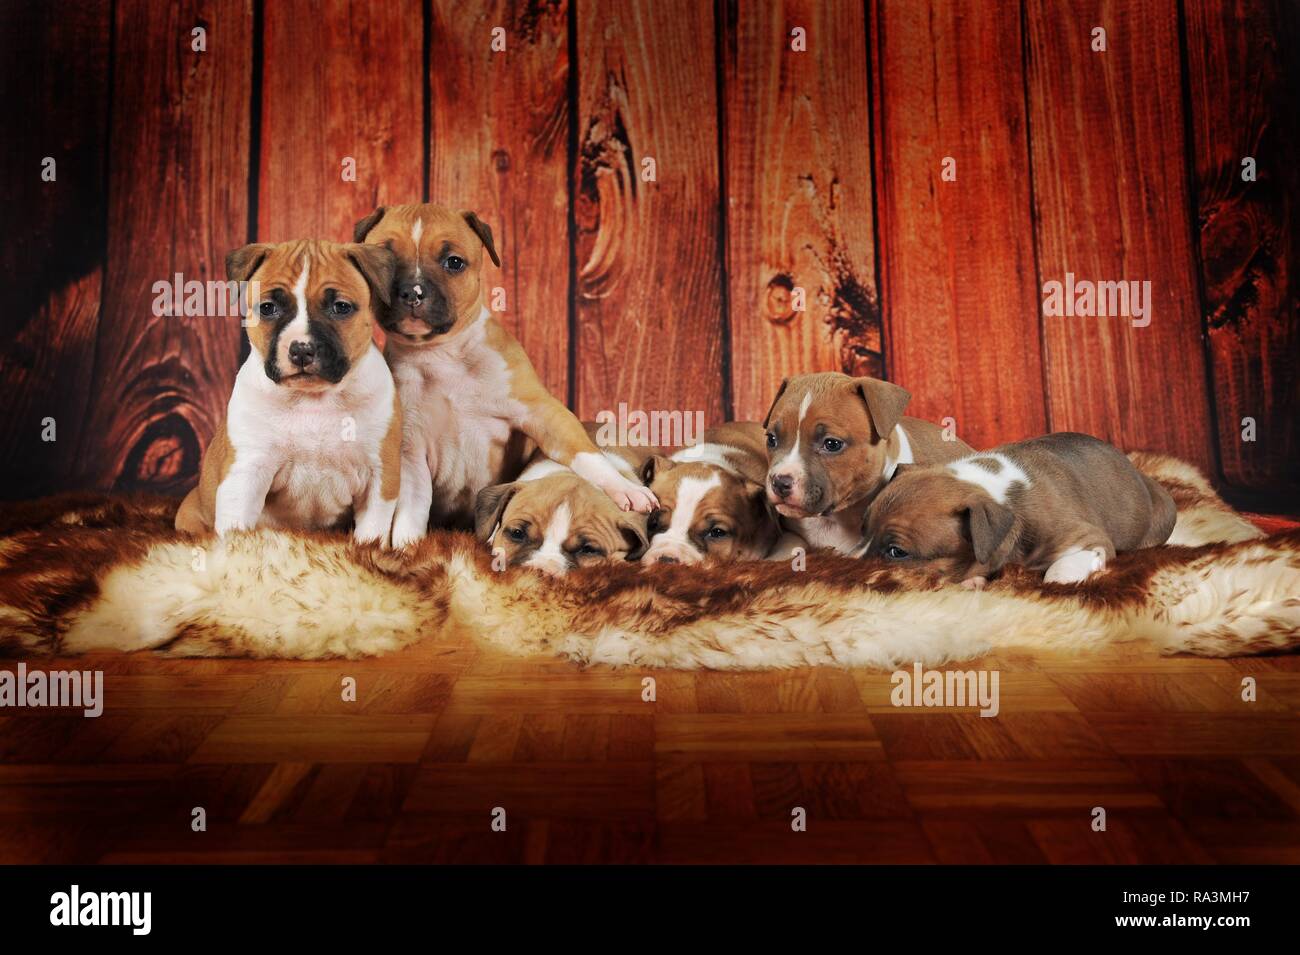 American Staffordshire Terrier, groupe de chiots 4 semaines, rouge-blanc, couché sur une couverture de fourrure, Autriche Banque D'Images